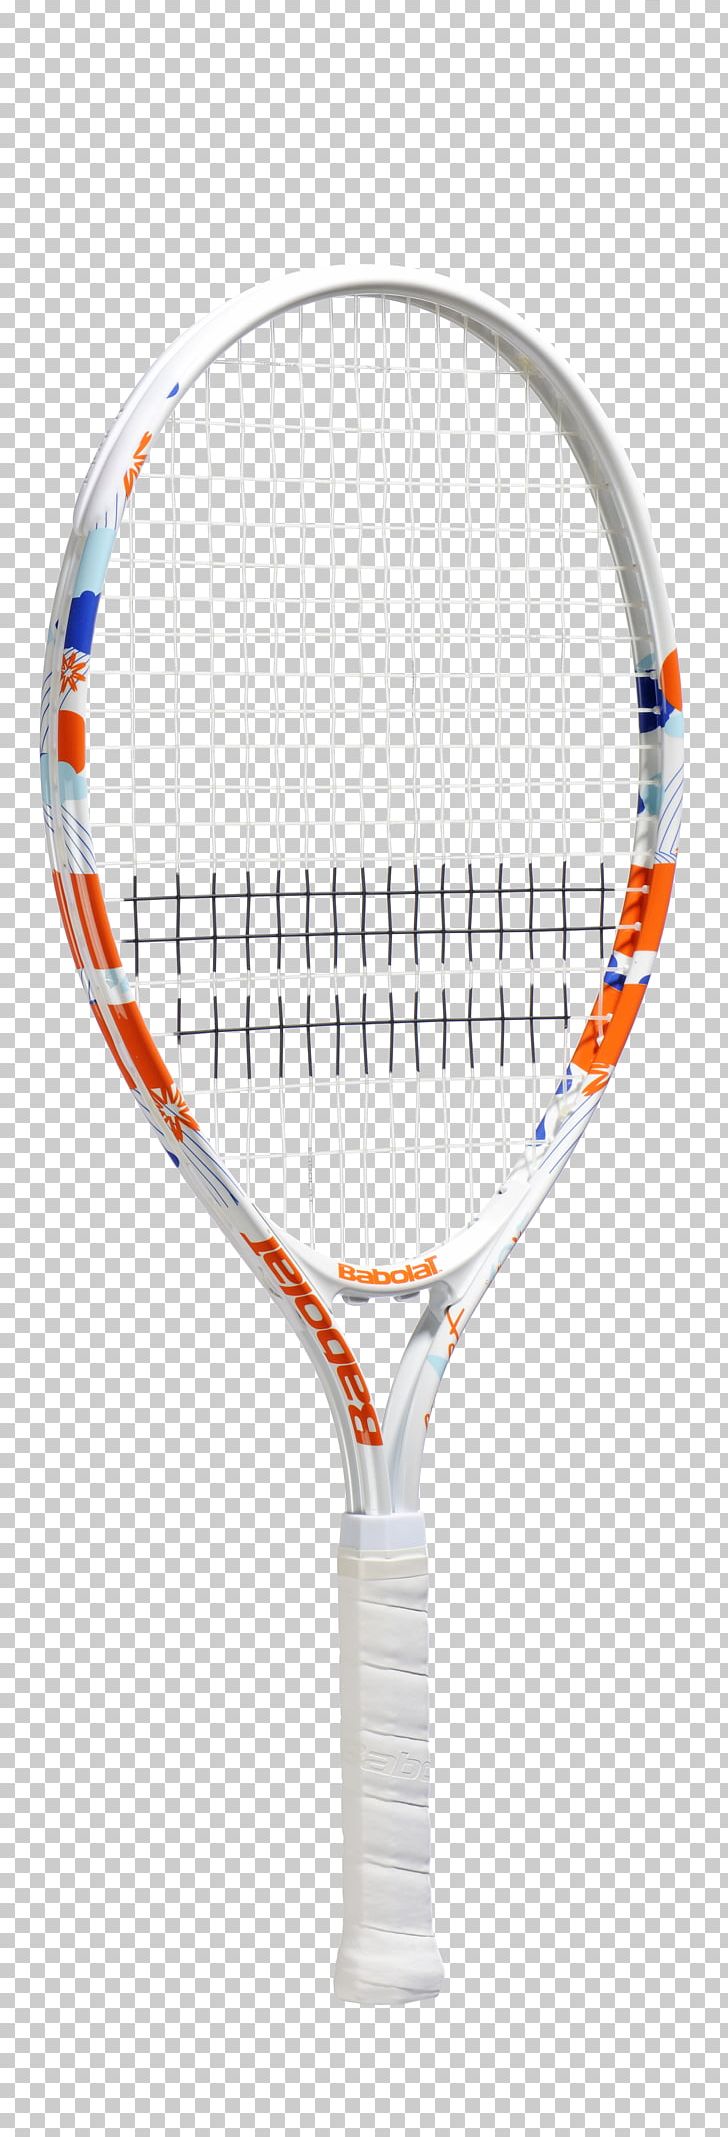 Racket Rakieta Tenisowa Tennis PNG, Clipart, Babolat, Comet, Junior, Line, Net Free PNG Download